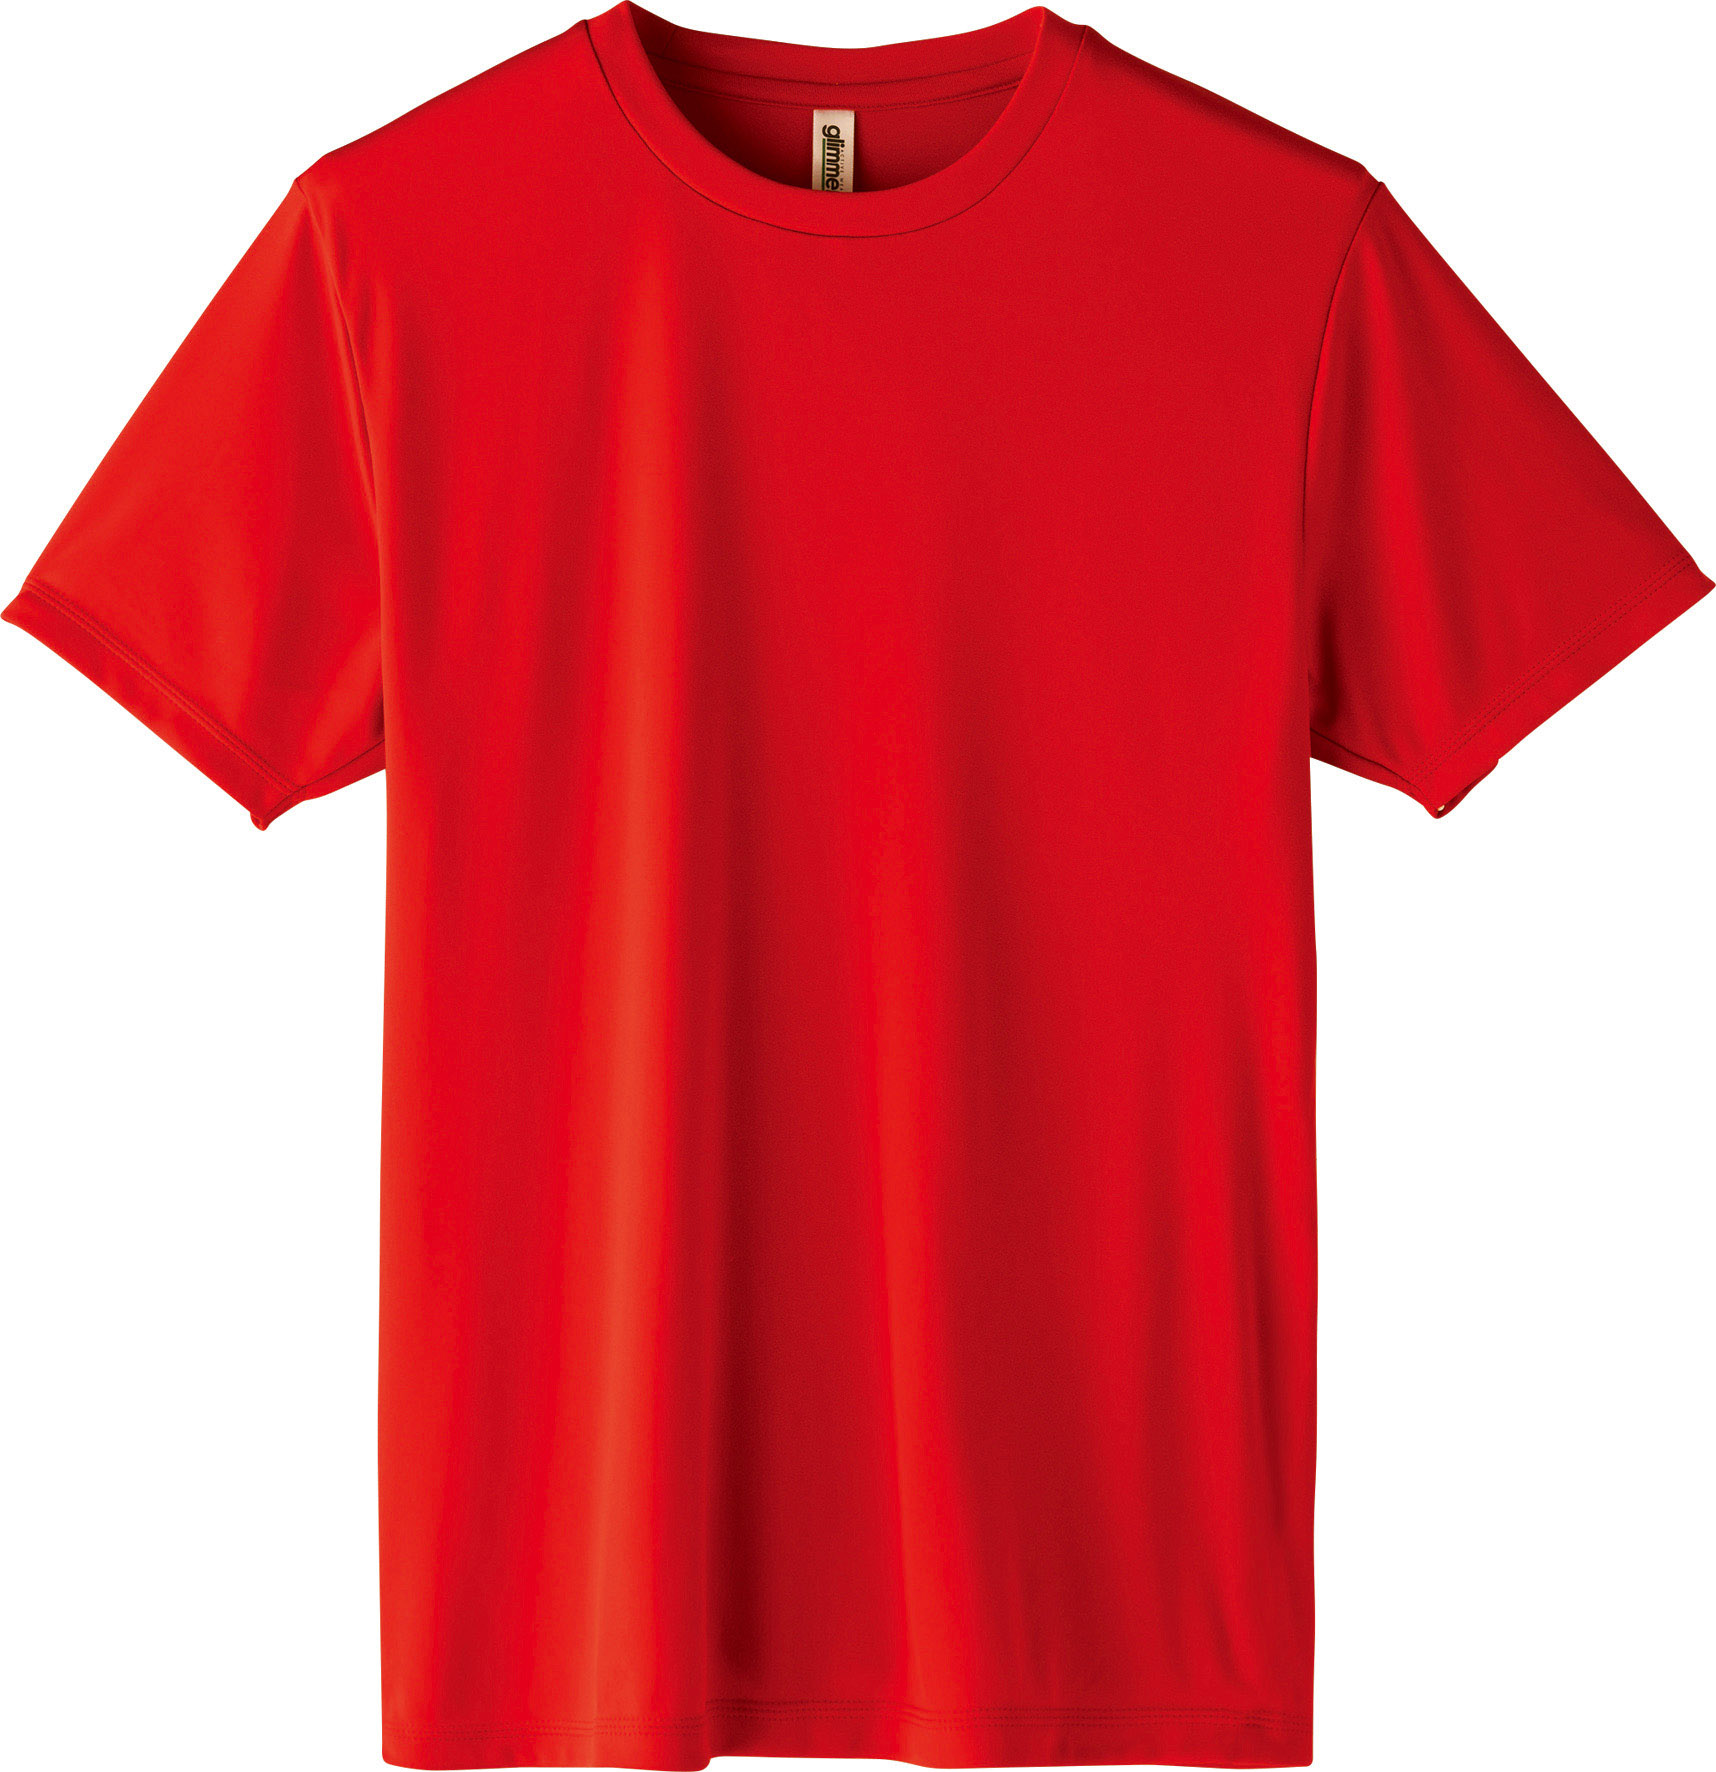 ドライ 半袖 Tシャツ 3.5オンス 薄手 UVカット グリマー glimmer 00350 AIT...